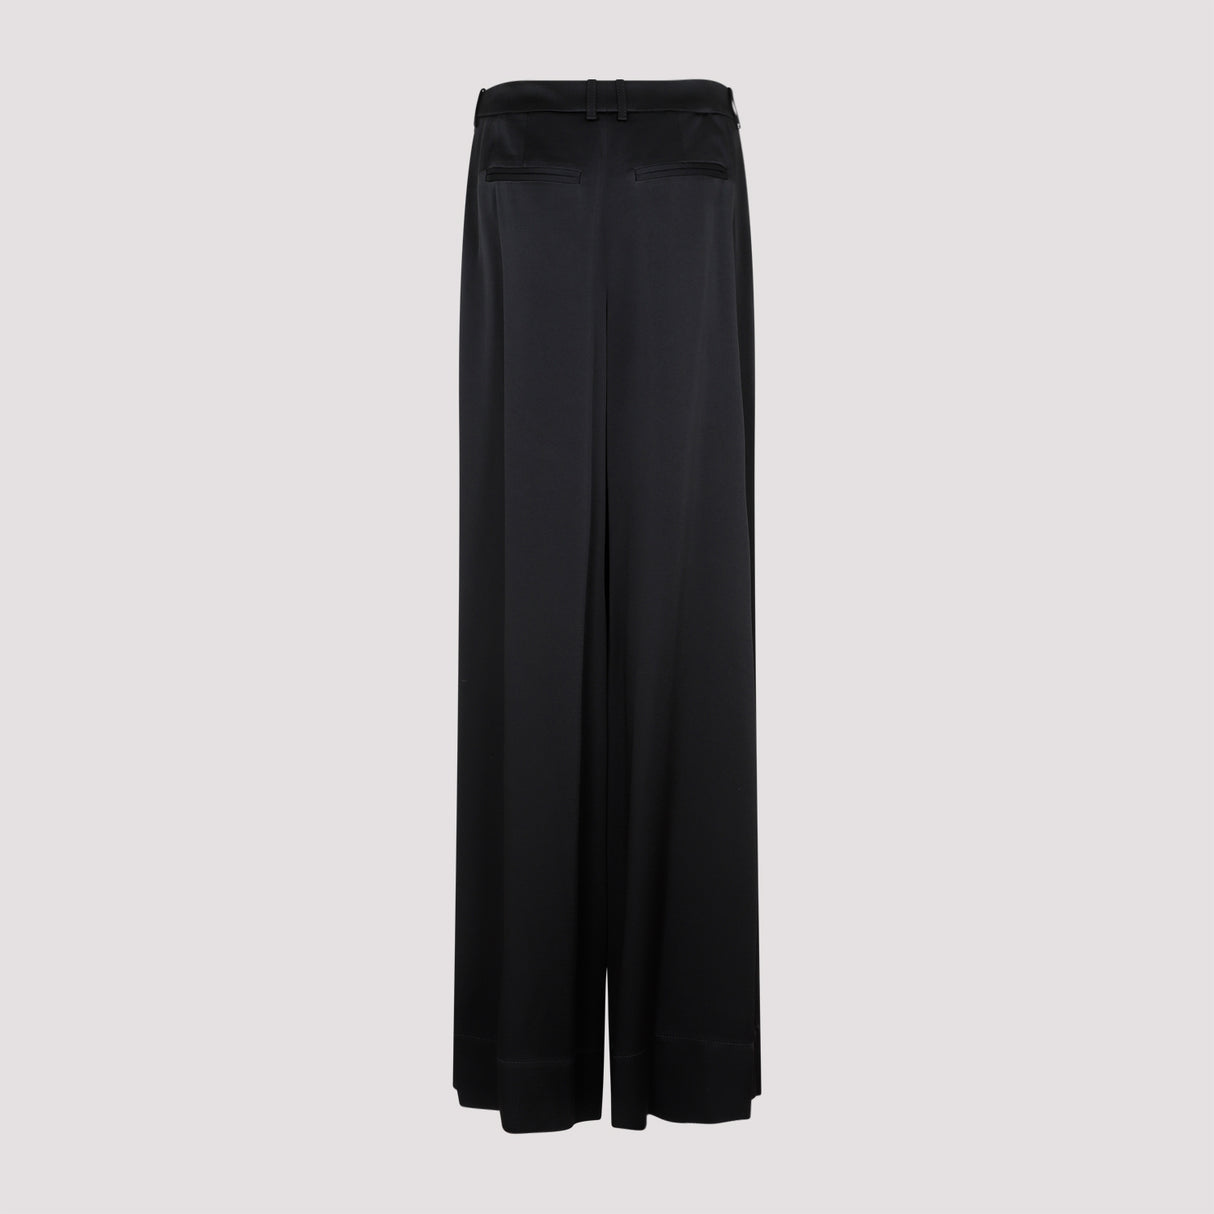 SAINT LAURENT Loose Fit Black Pants for Women - SS23 Collection